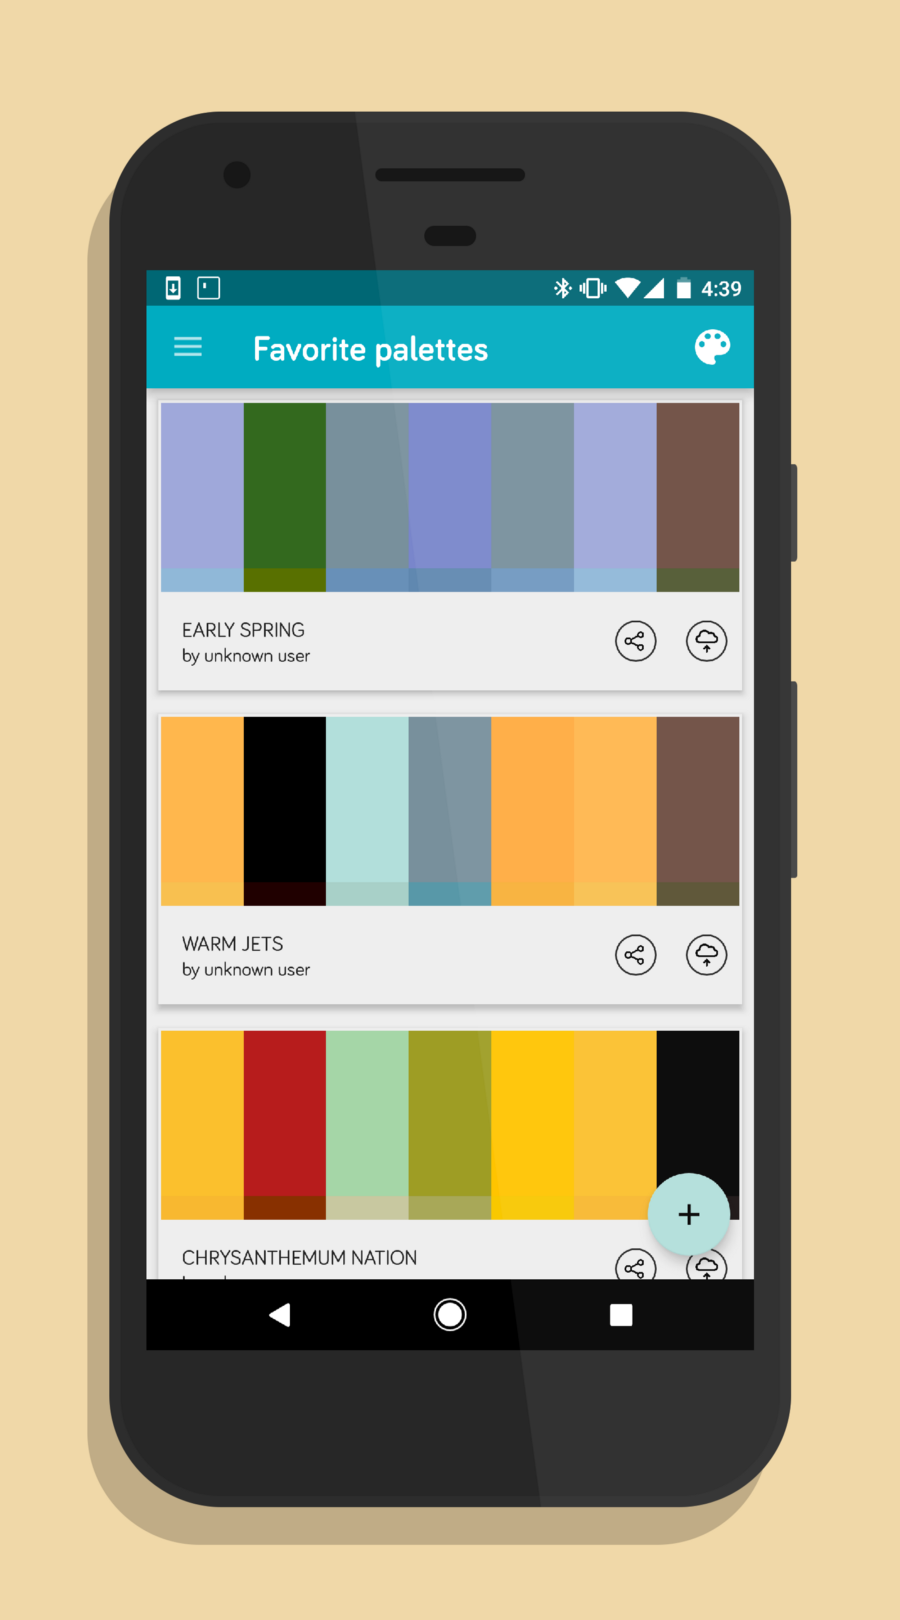 安卓开发者必备的 5 款 App：终端模拟器、颜色萃取、移动 IDE 等